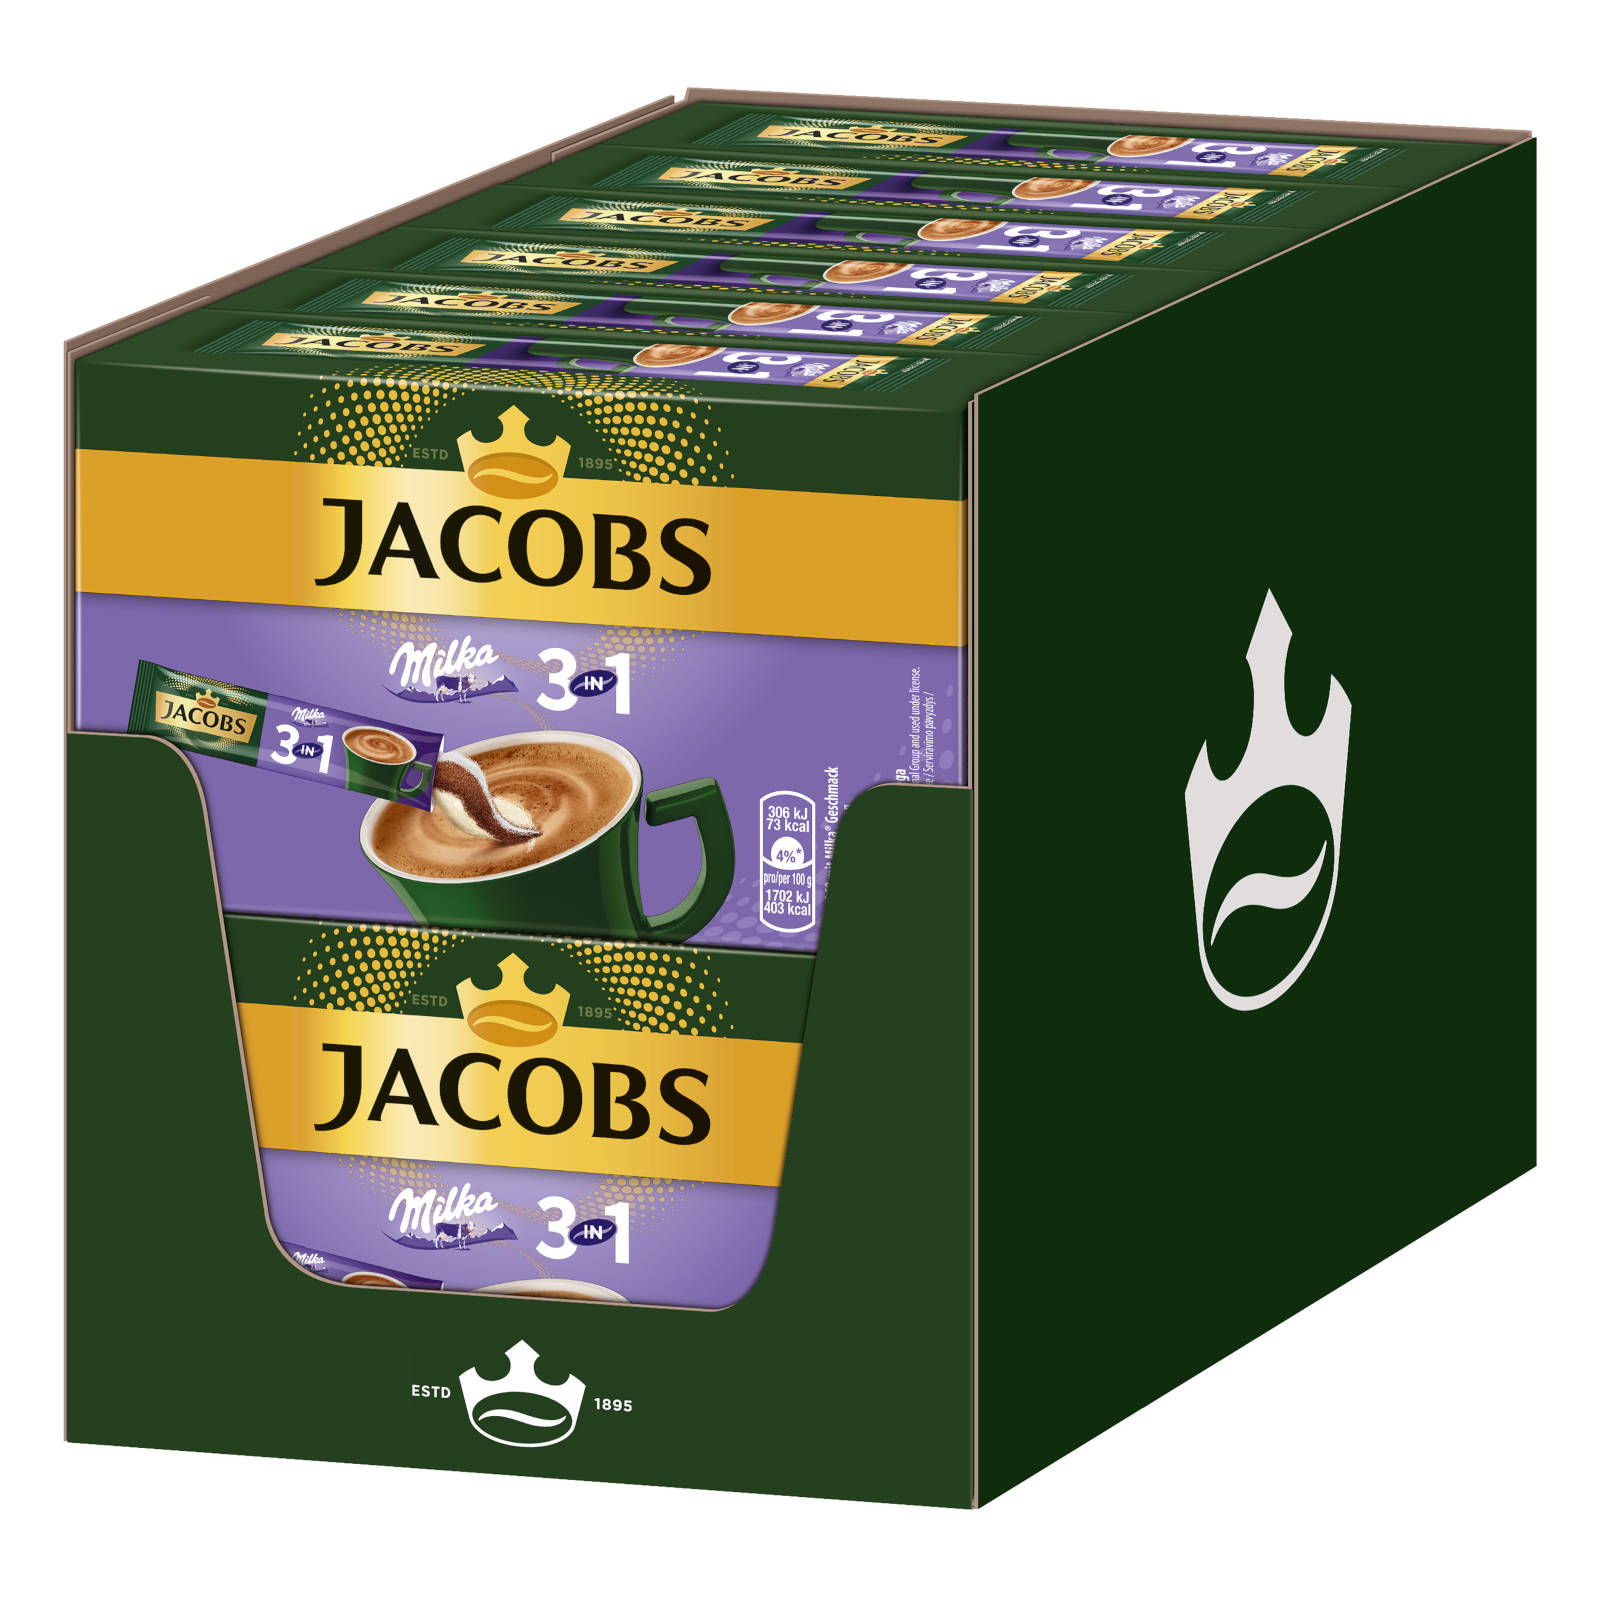 12 Getränke JACOBS Sticks 10 auflösen) x 3in1 Instantkaffee (In Wasser Milka®* heißem